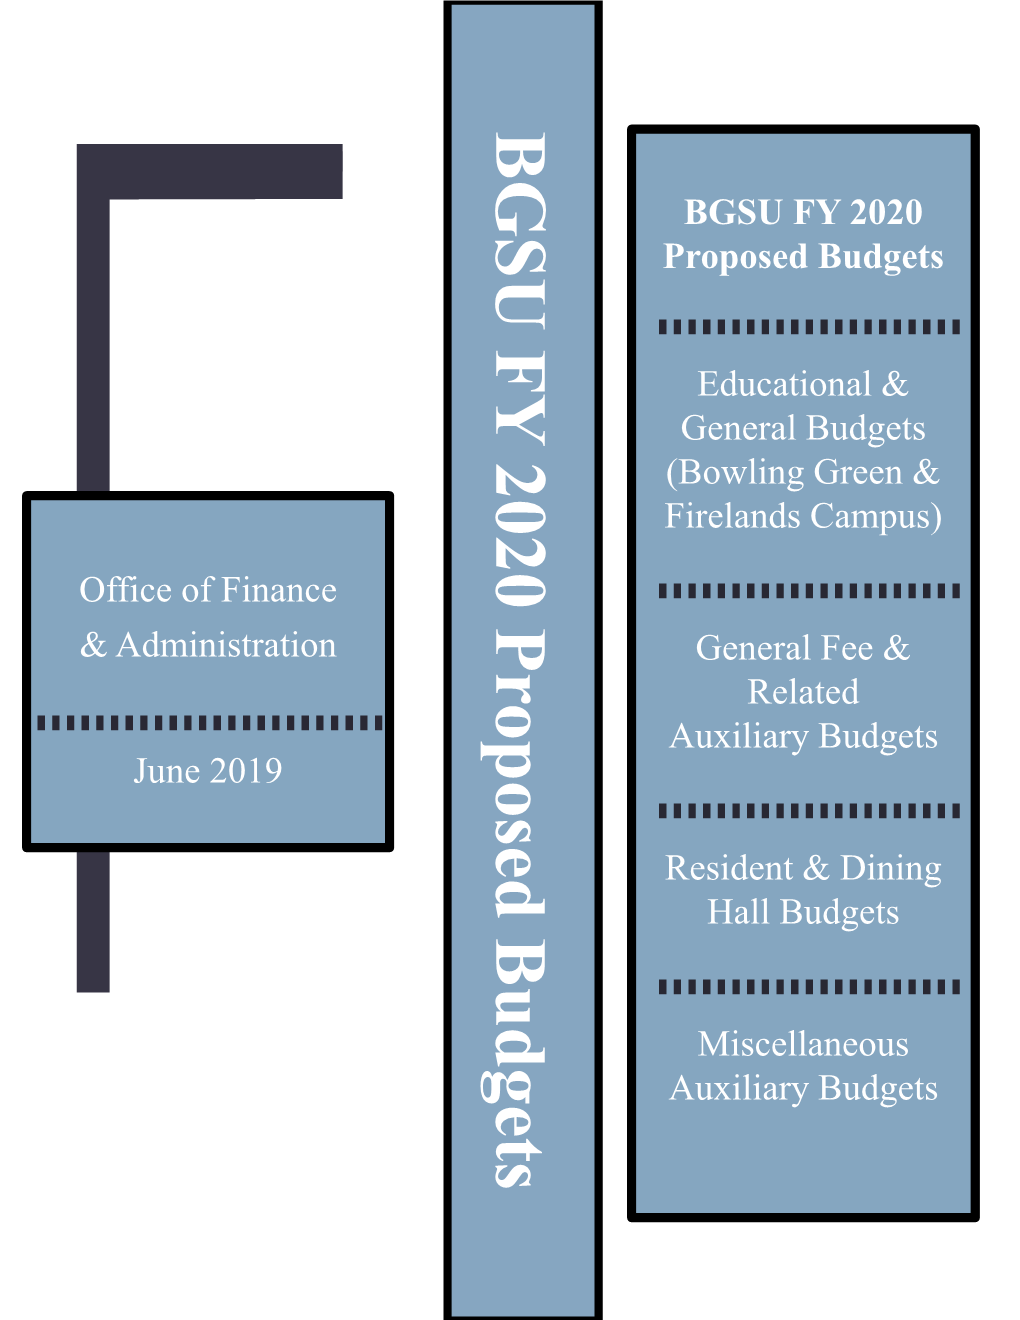 BGSU FY 2020 Proposed Budgets